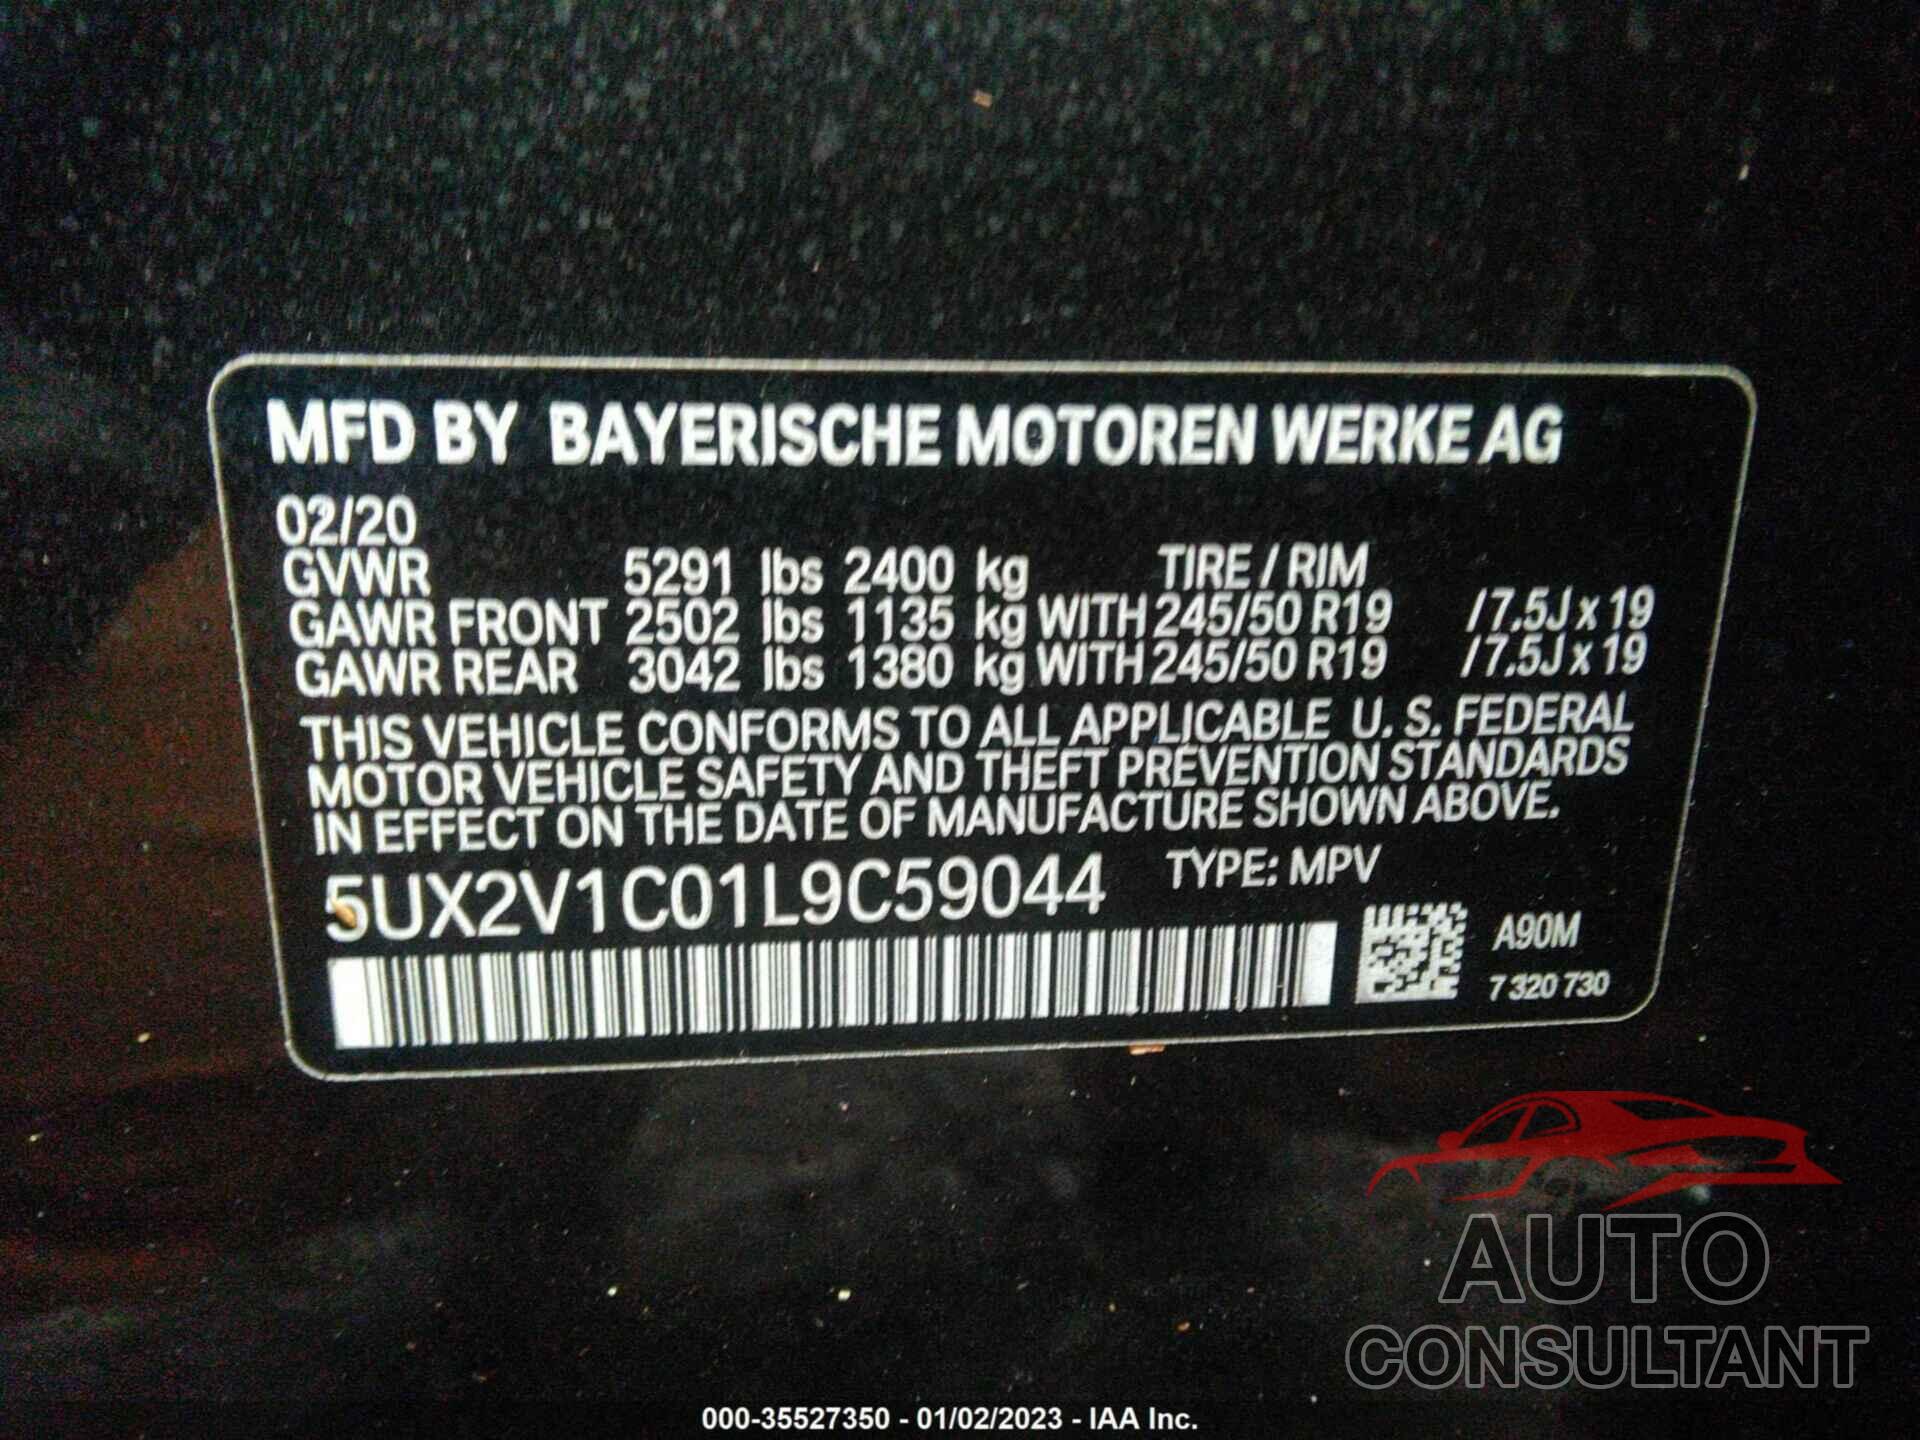 BMW X4 2020 - 5UX2V1C01L9C59044